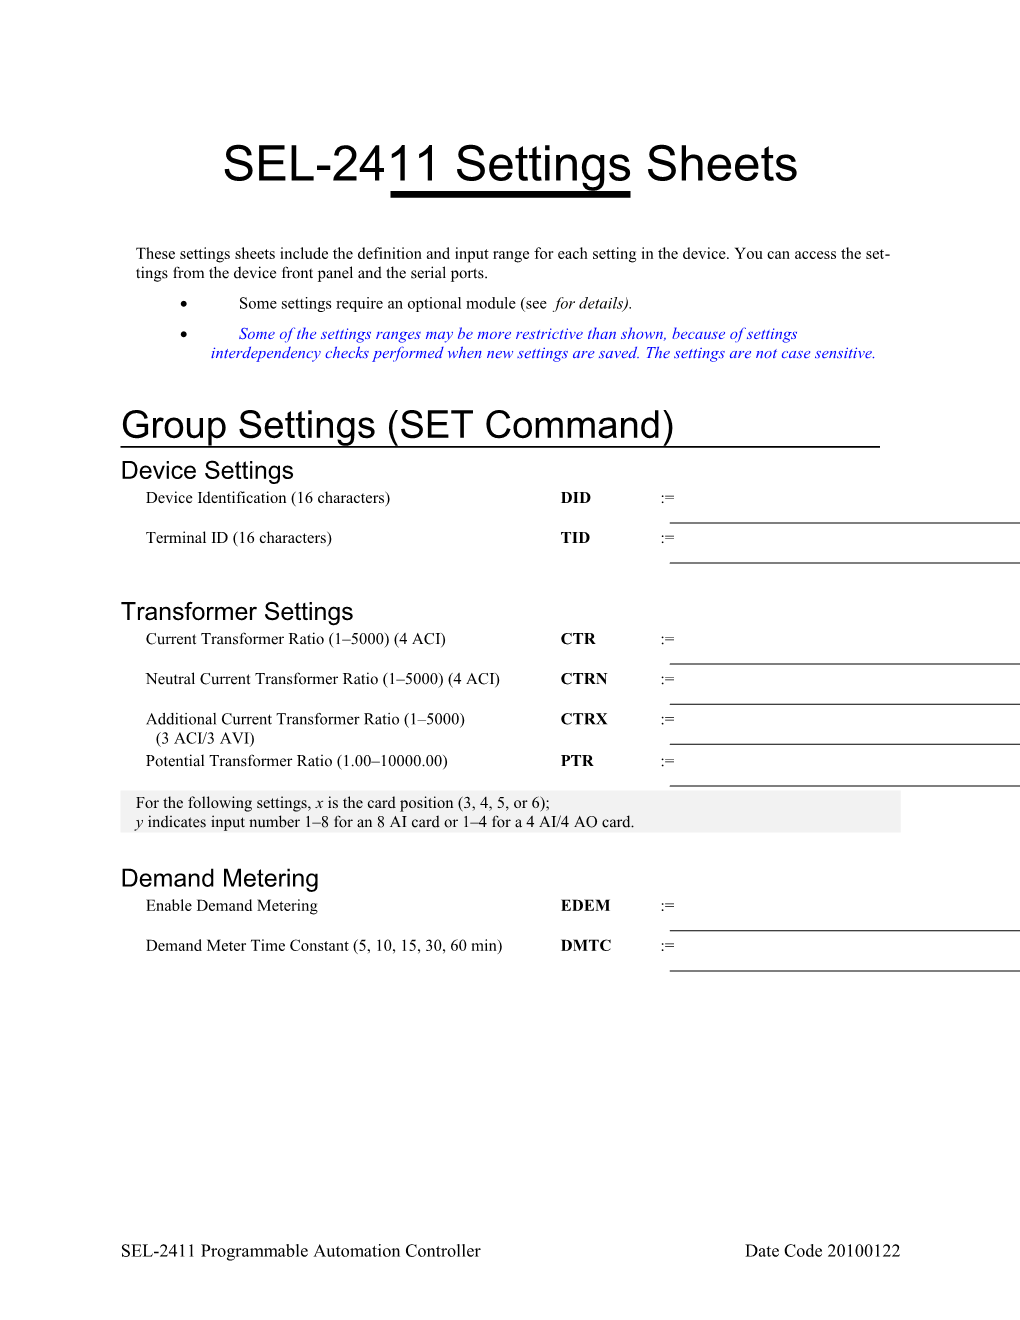 SEL-2411 Settings Sheets 45